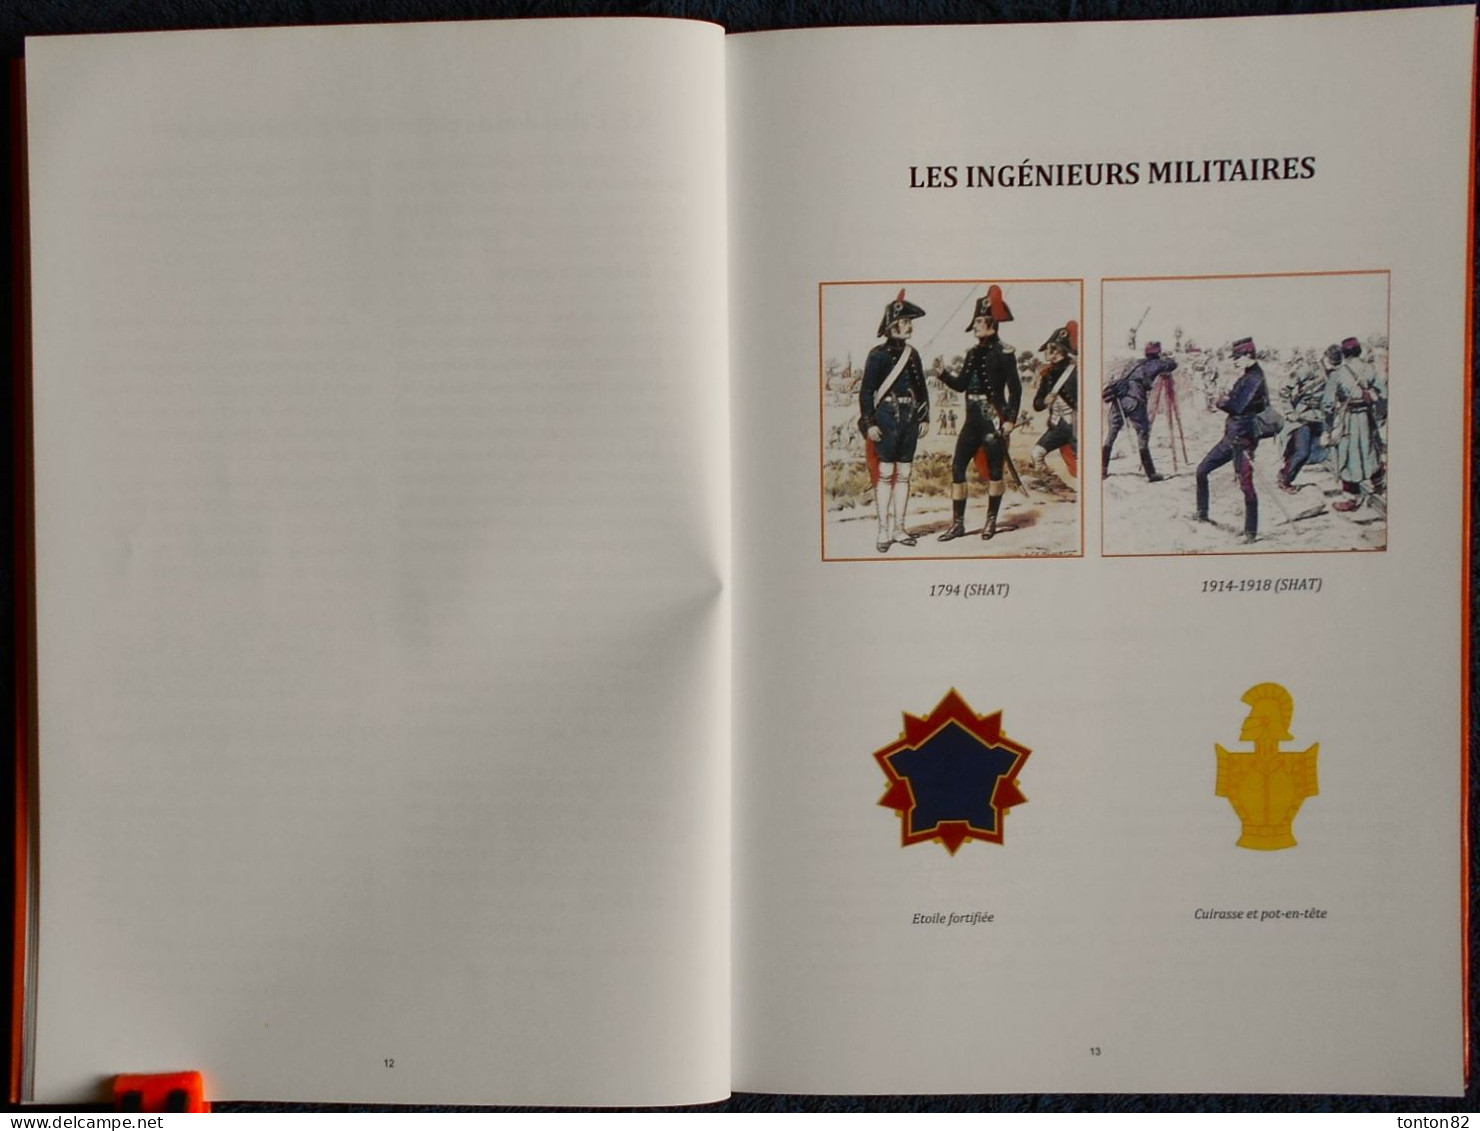 Histoire des Casernements Militaires en Tarn et Garonne - Ateliers du Moustier - ( 1989 ) .